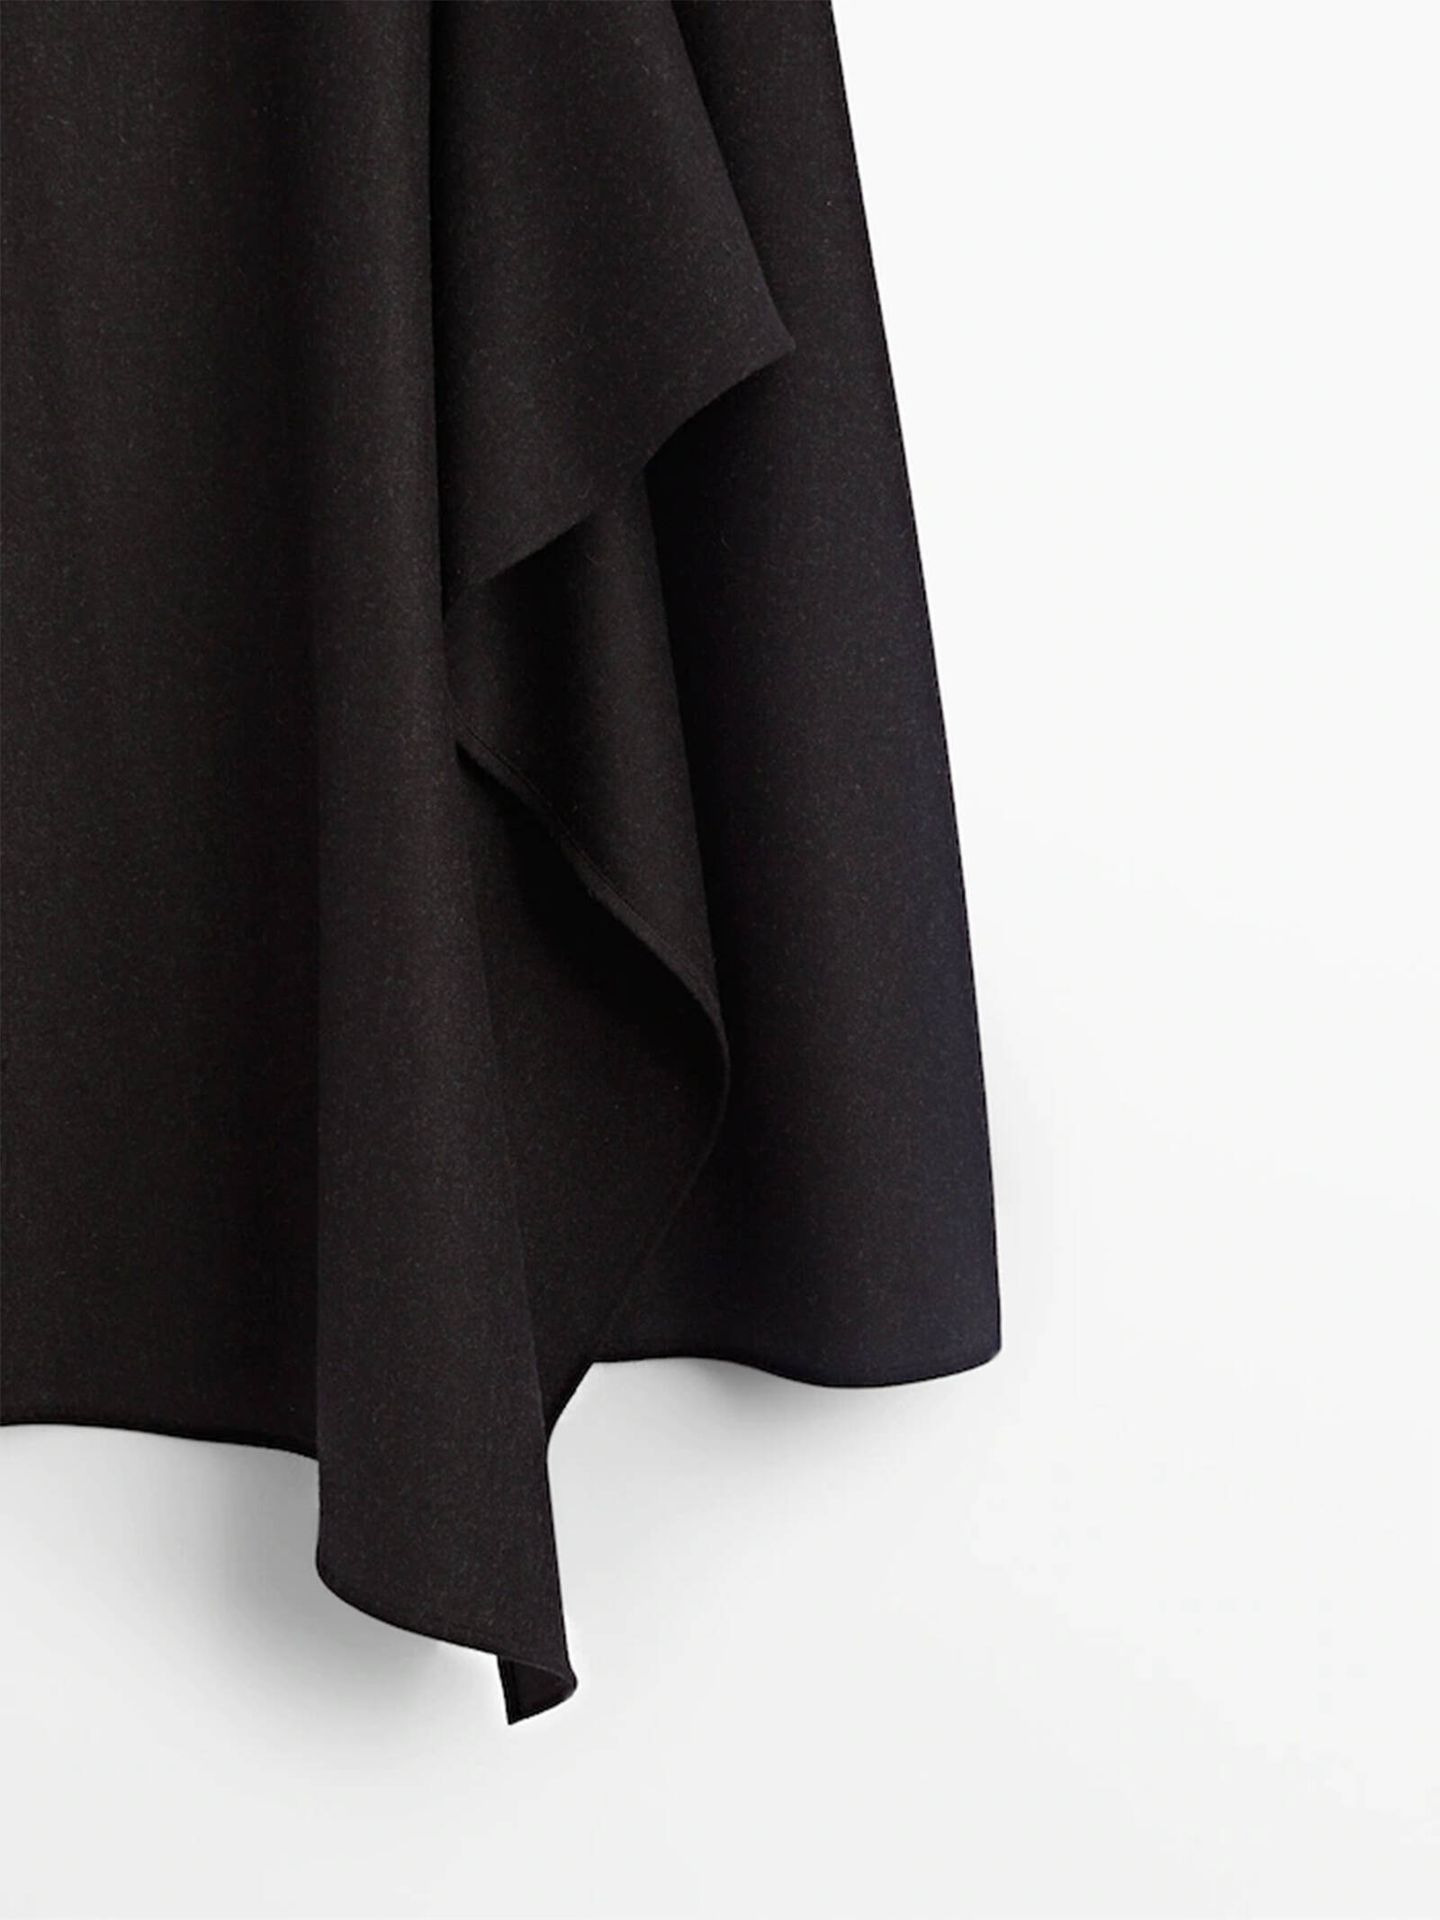 La falda midi perfecta para el invierno está en Massimo Dutti. (Cortesía)